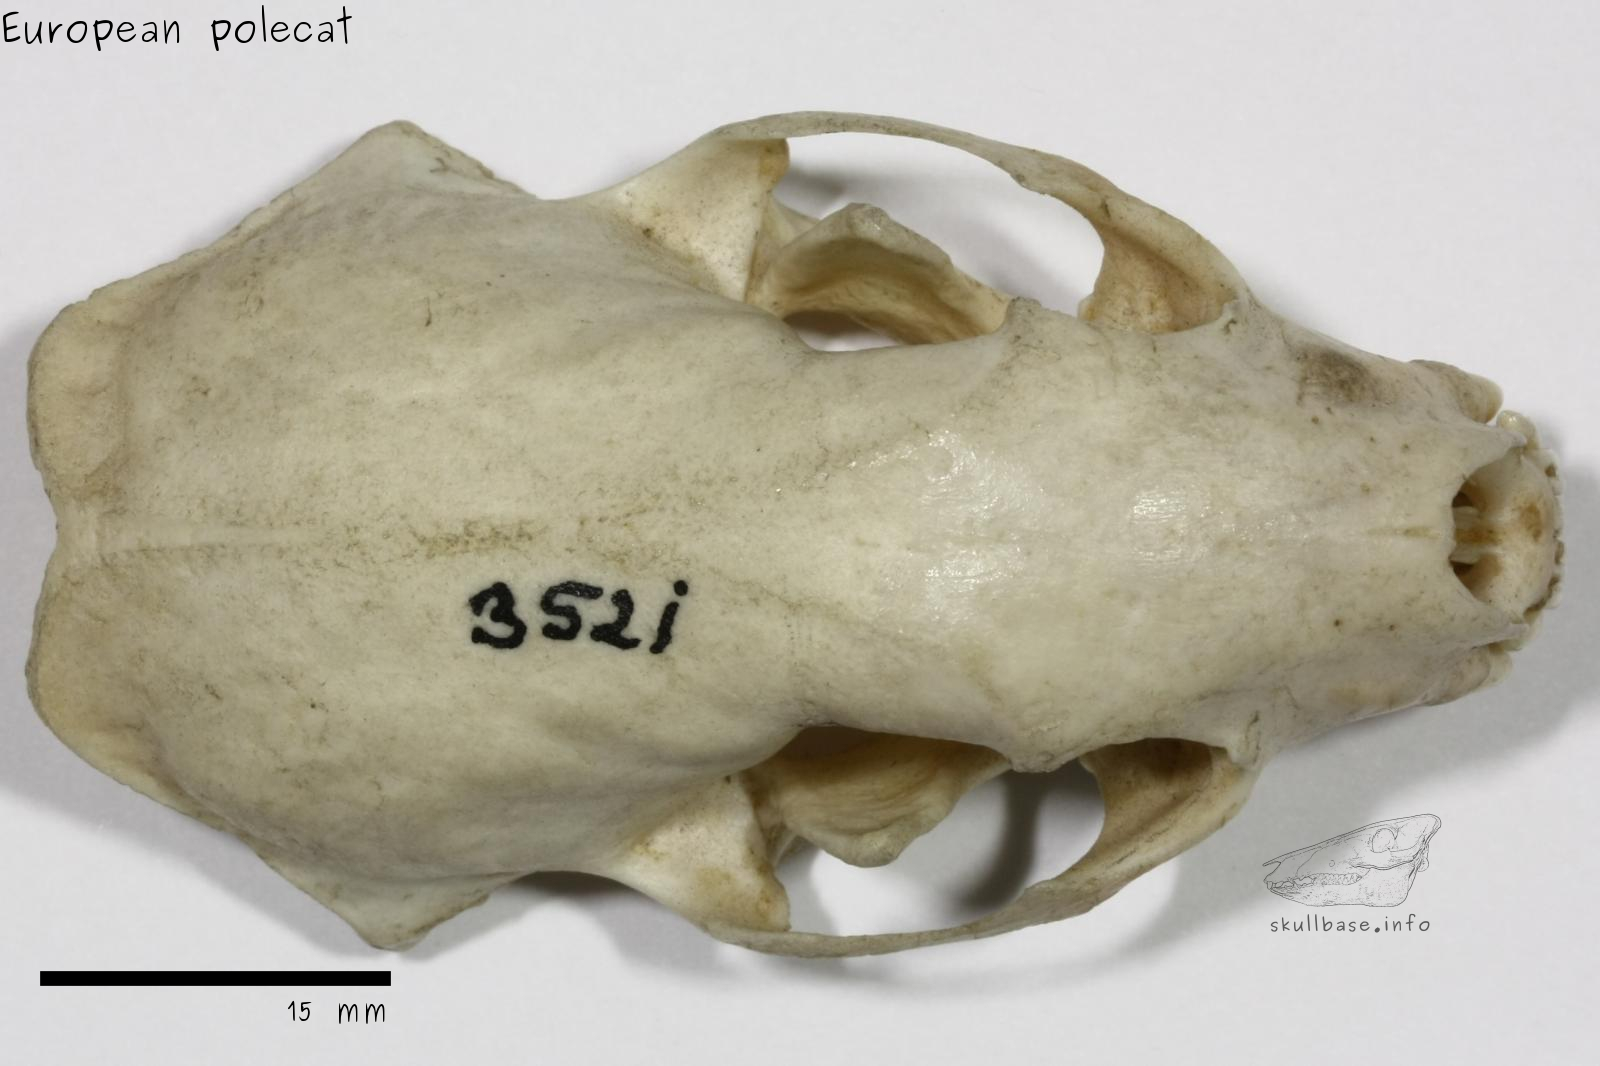 European polecat (Mustela putorius) skull dorsal view